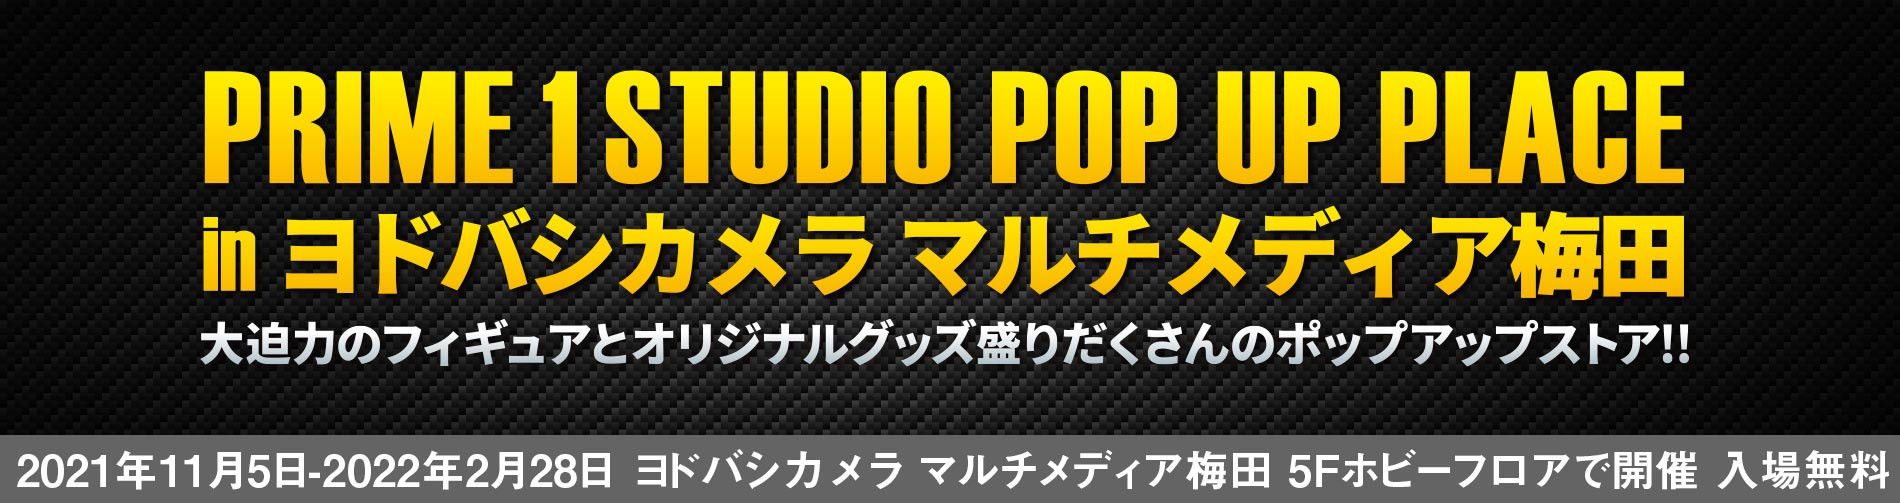 プライム1スタジオのPOP UPストア「PRIME１STUDIO POP UP PLACE inヨドバシカメラマルチメディア梅田」が2022/2/28まで好評開催中！